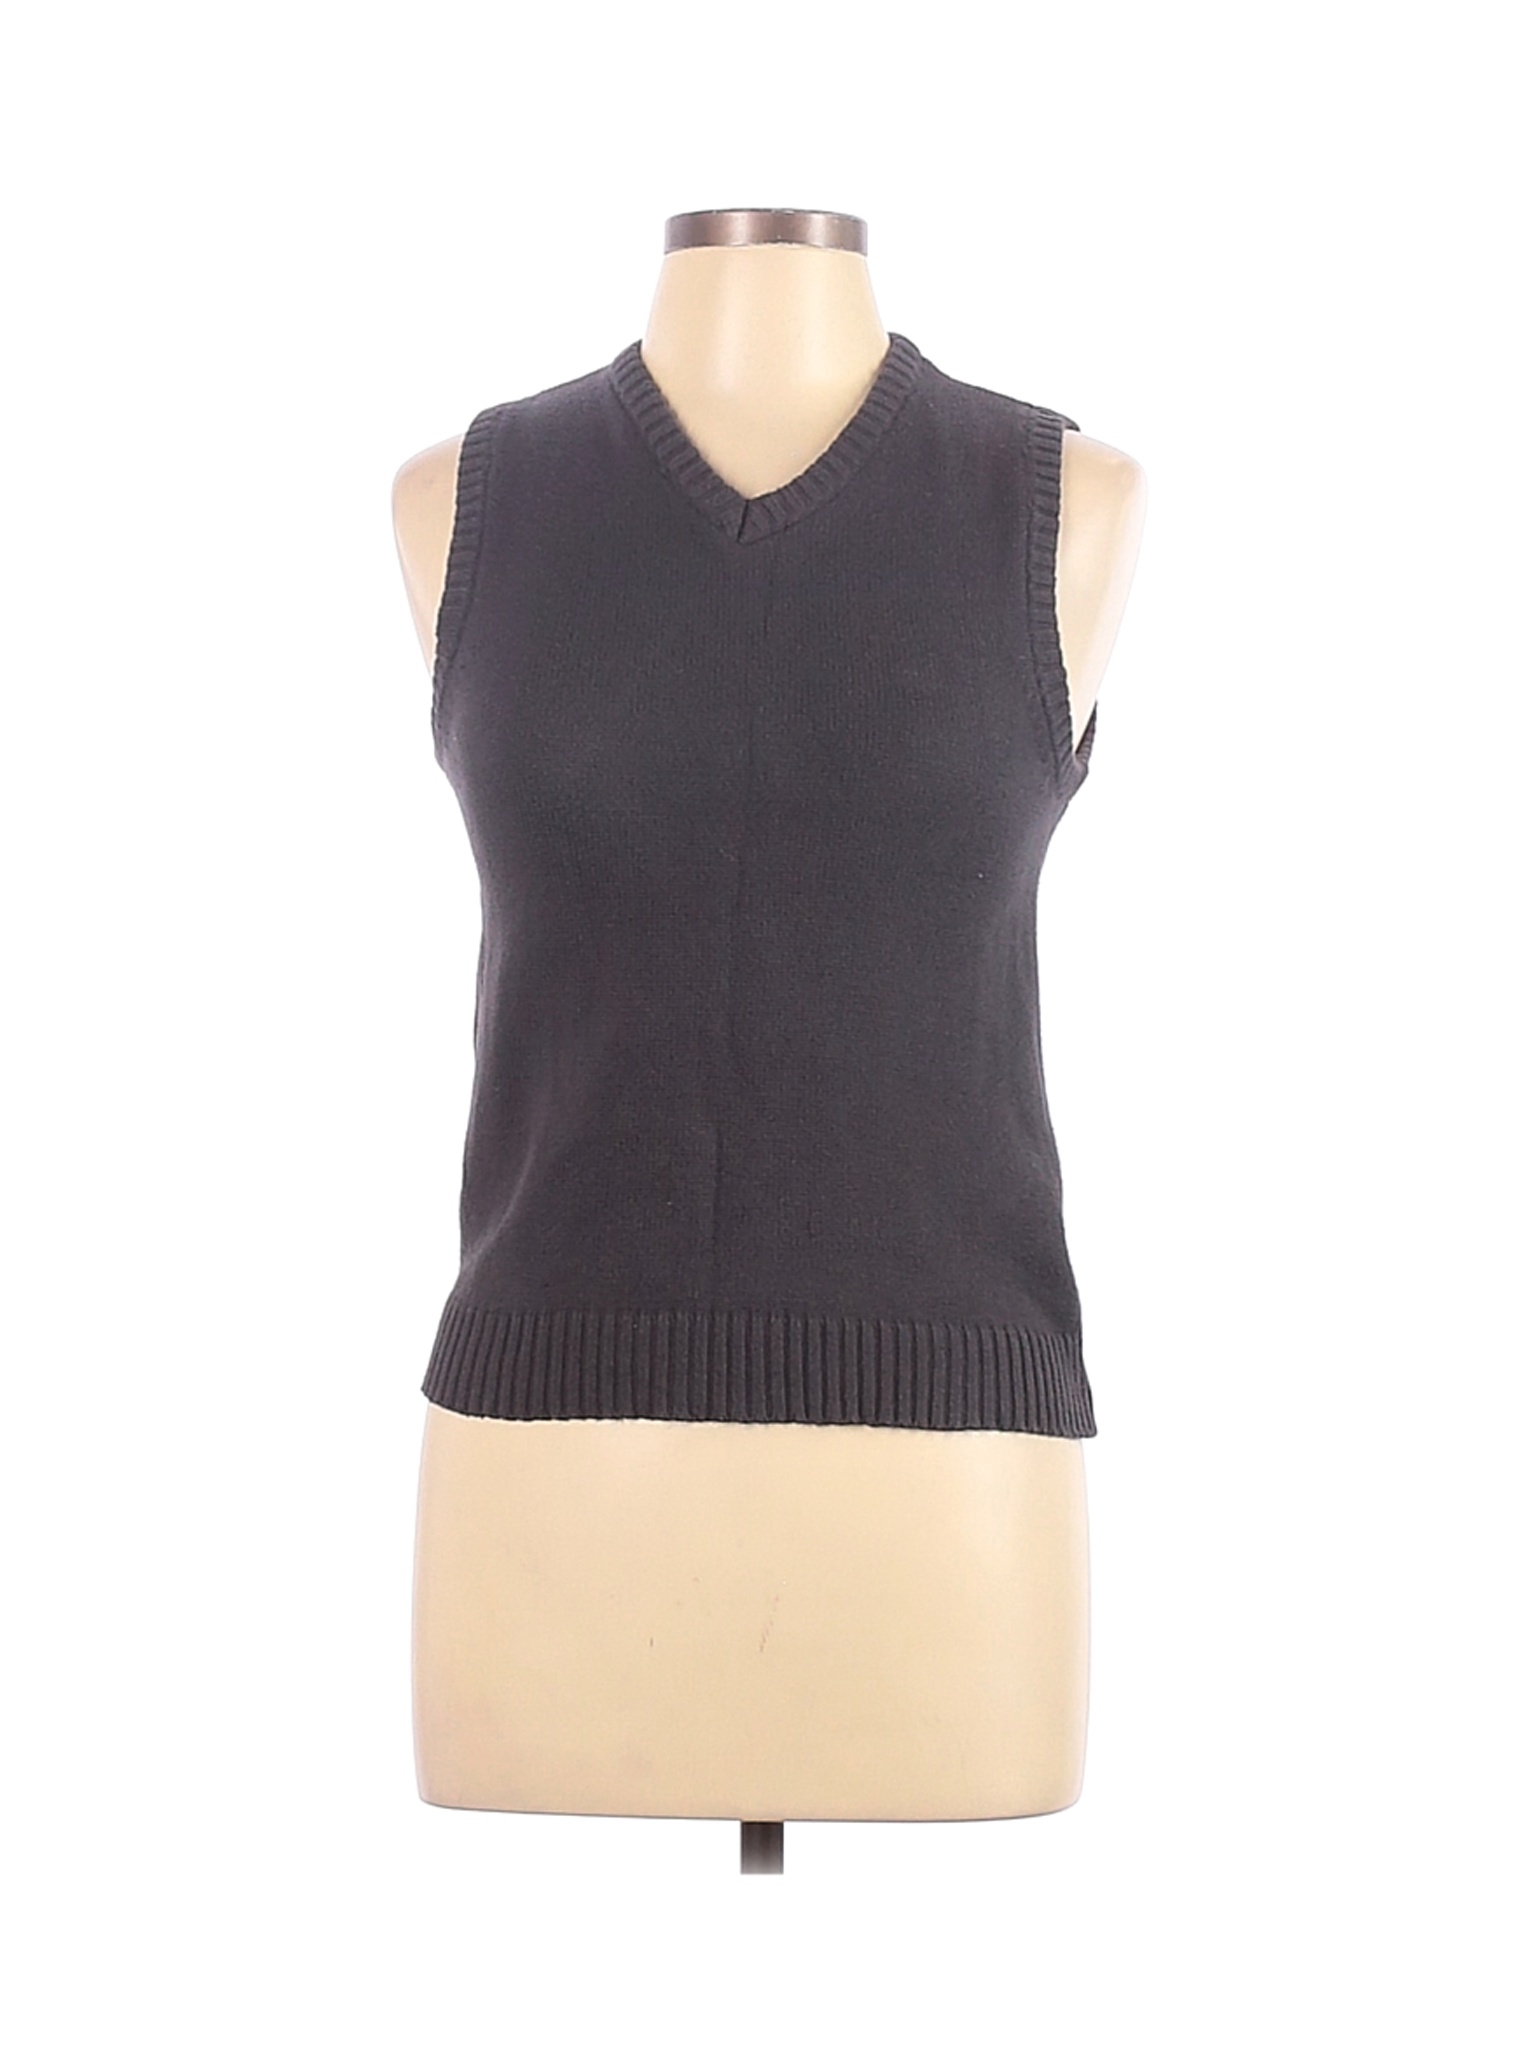 Gioberti Women Gray Sweater Vest 12 | eBay